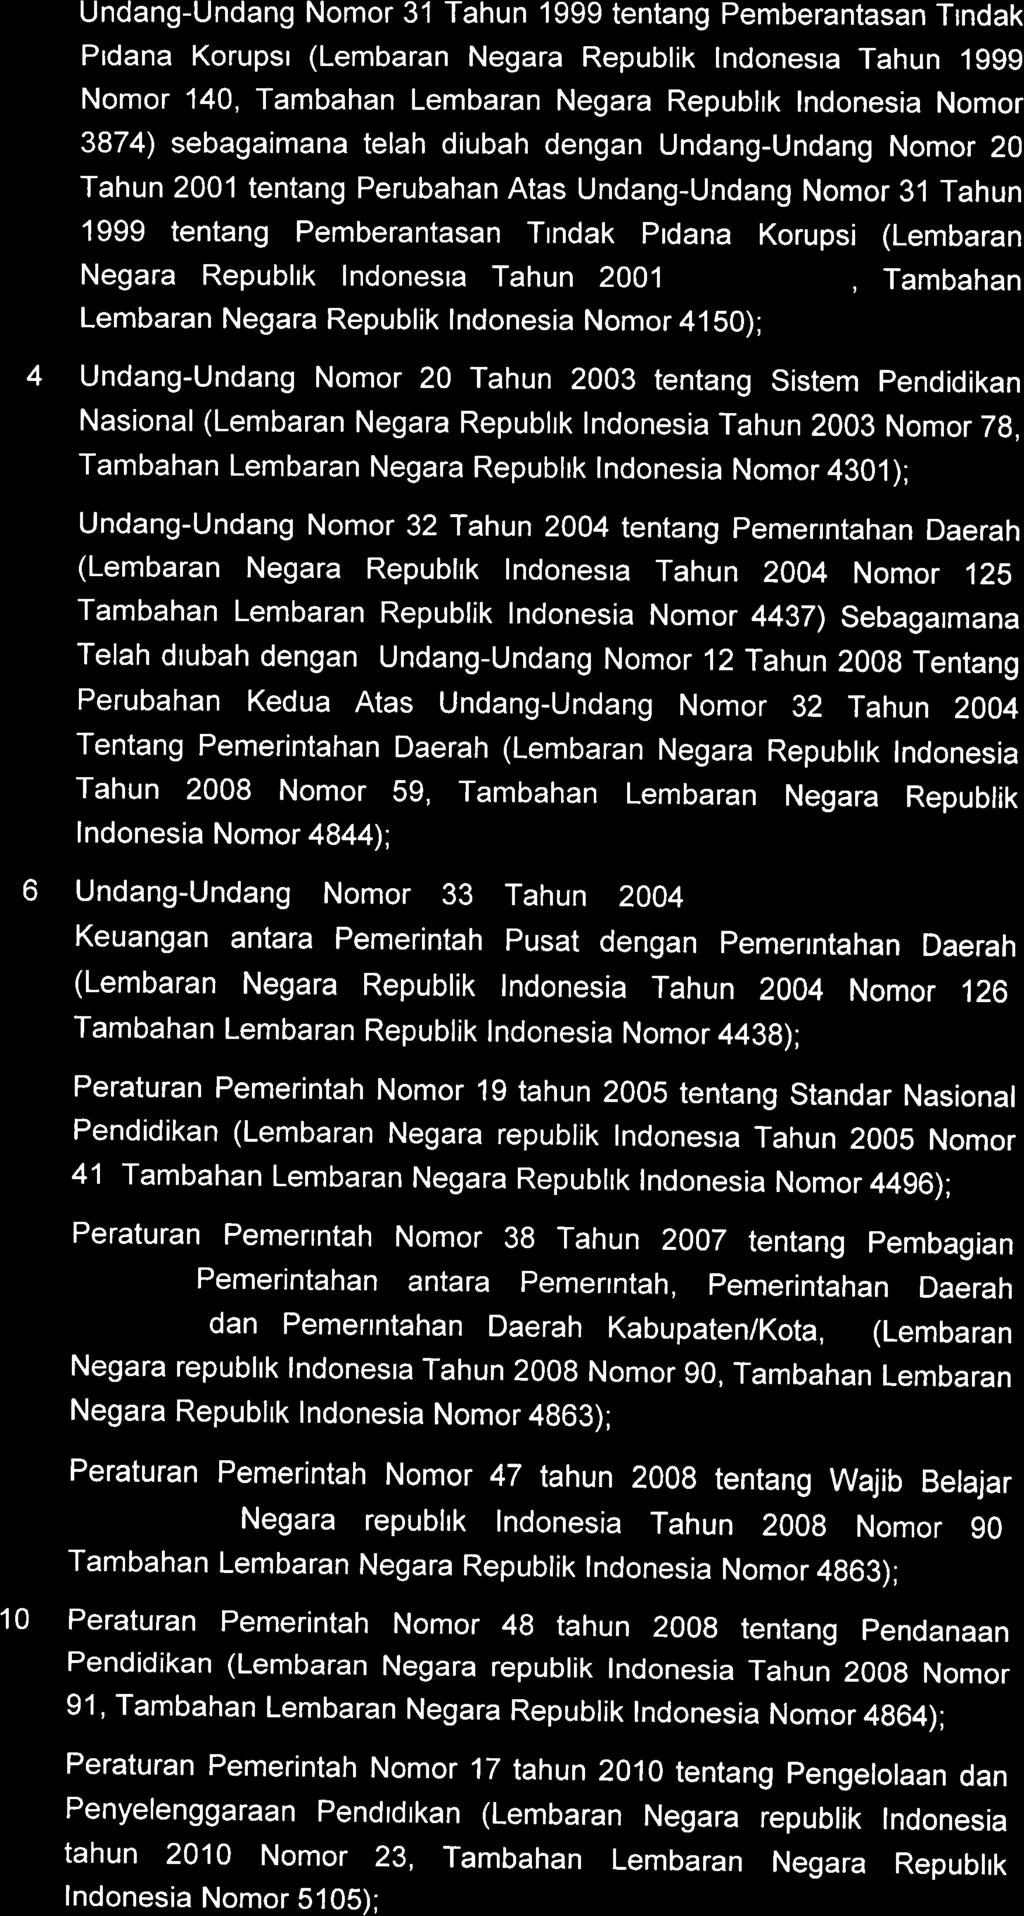 3. Undang-Undang Nomor 31 Tahun 1999 tentang Pemberantasan Tindak Pidana Korupsi (Lembaran Negara Republik Indonesia Tahun 1999 Nomor 140, Tambahan Lembaran Negara Republik Indonesia Nomor 3874)